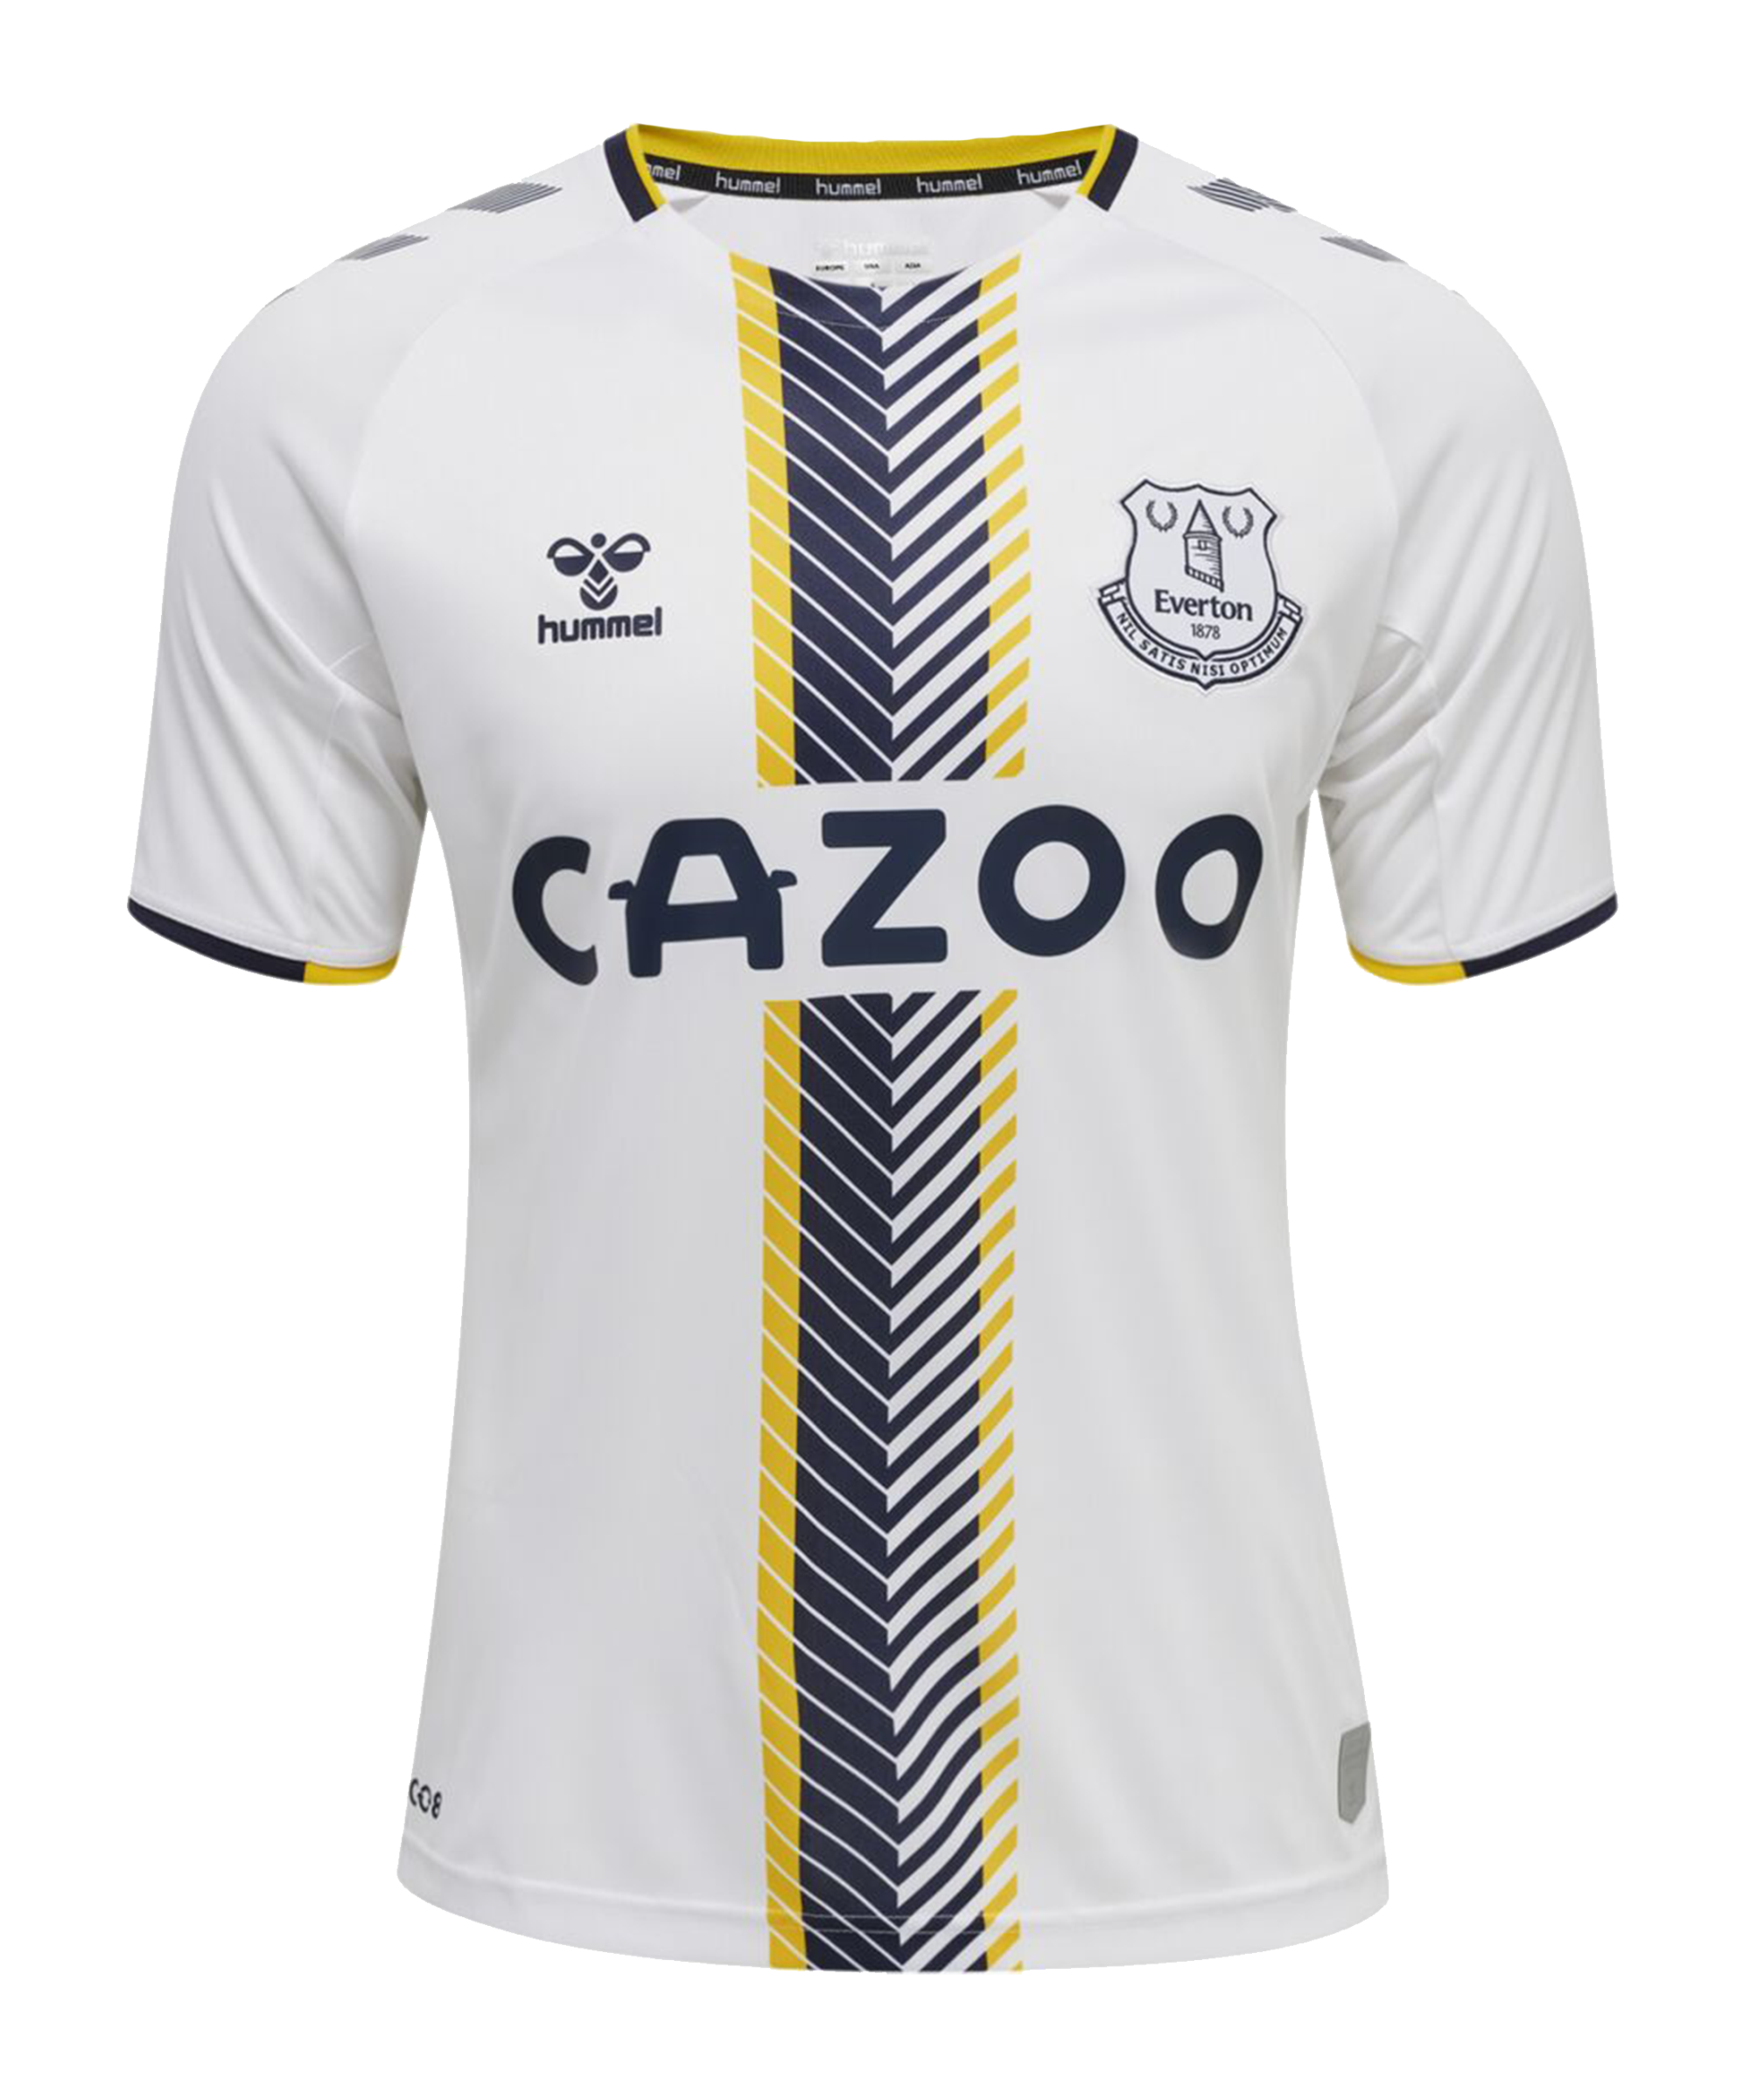 Calvert-Lewin New Hummel 3rd Top Size 7-8Y Hummel Everton Kid's Football Shirt 